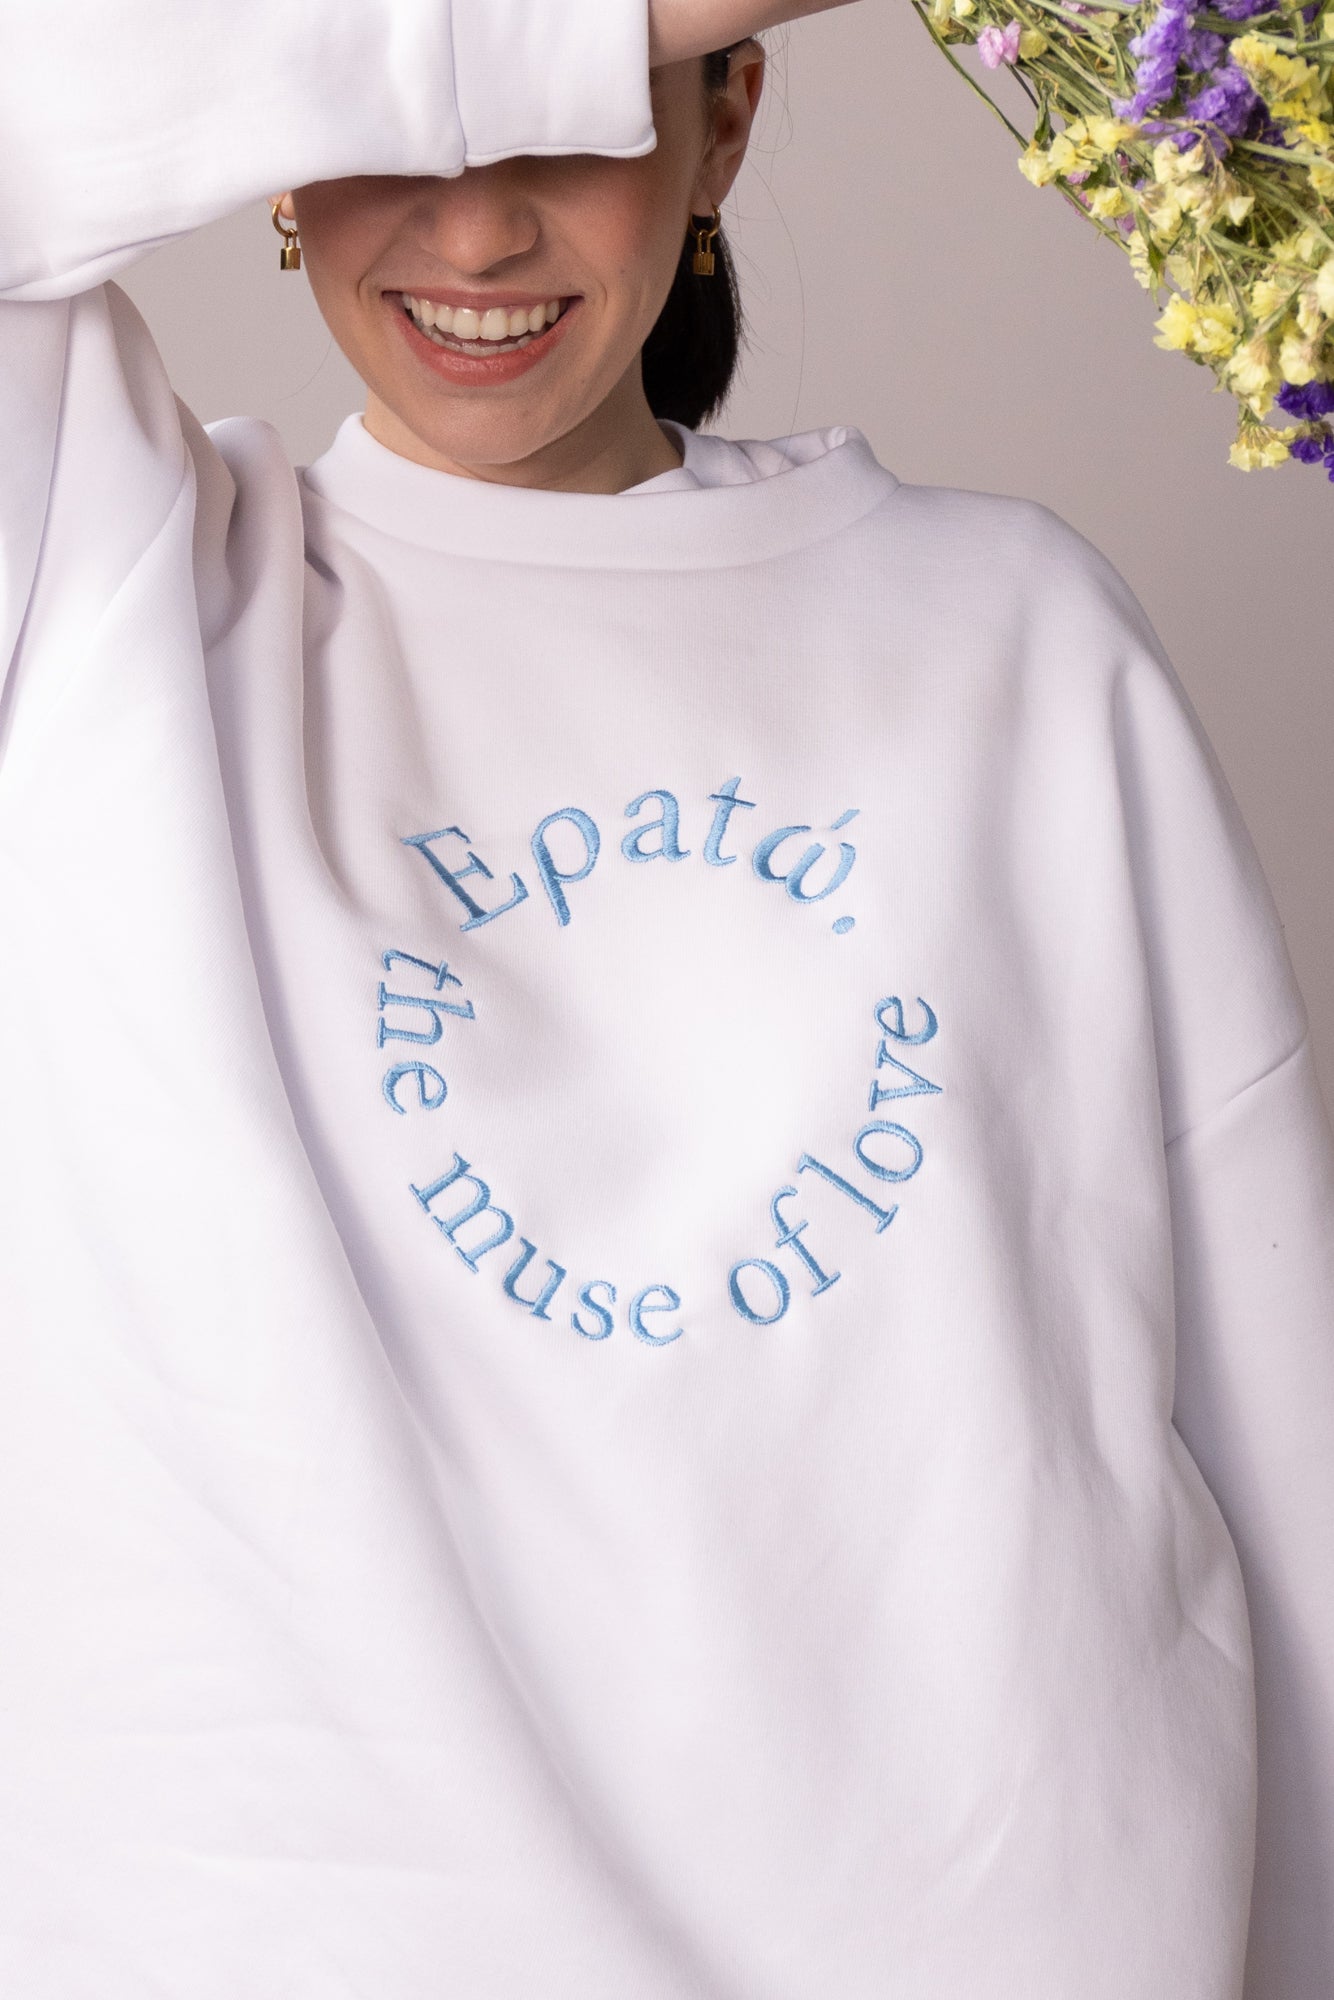 Eratw- Dance Sweatshirt